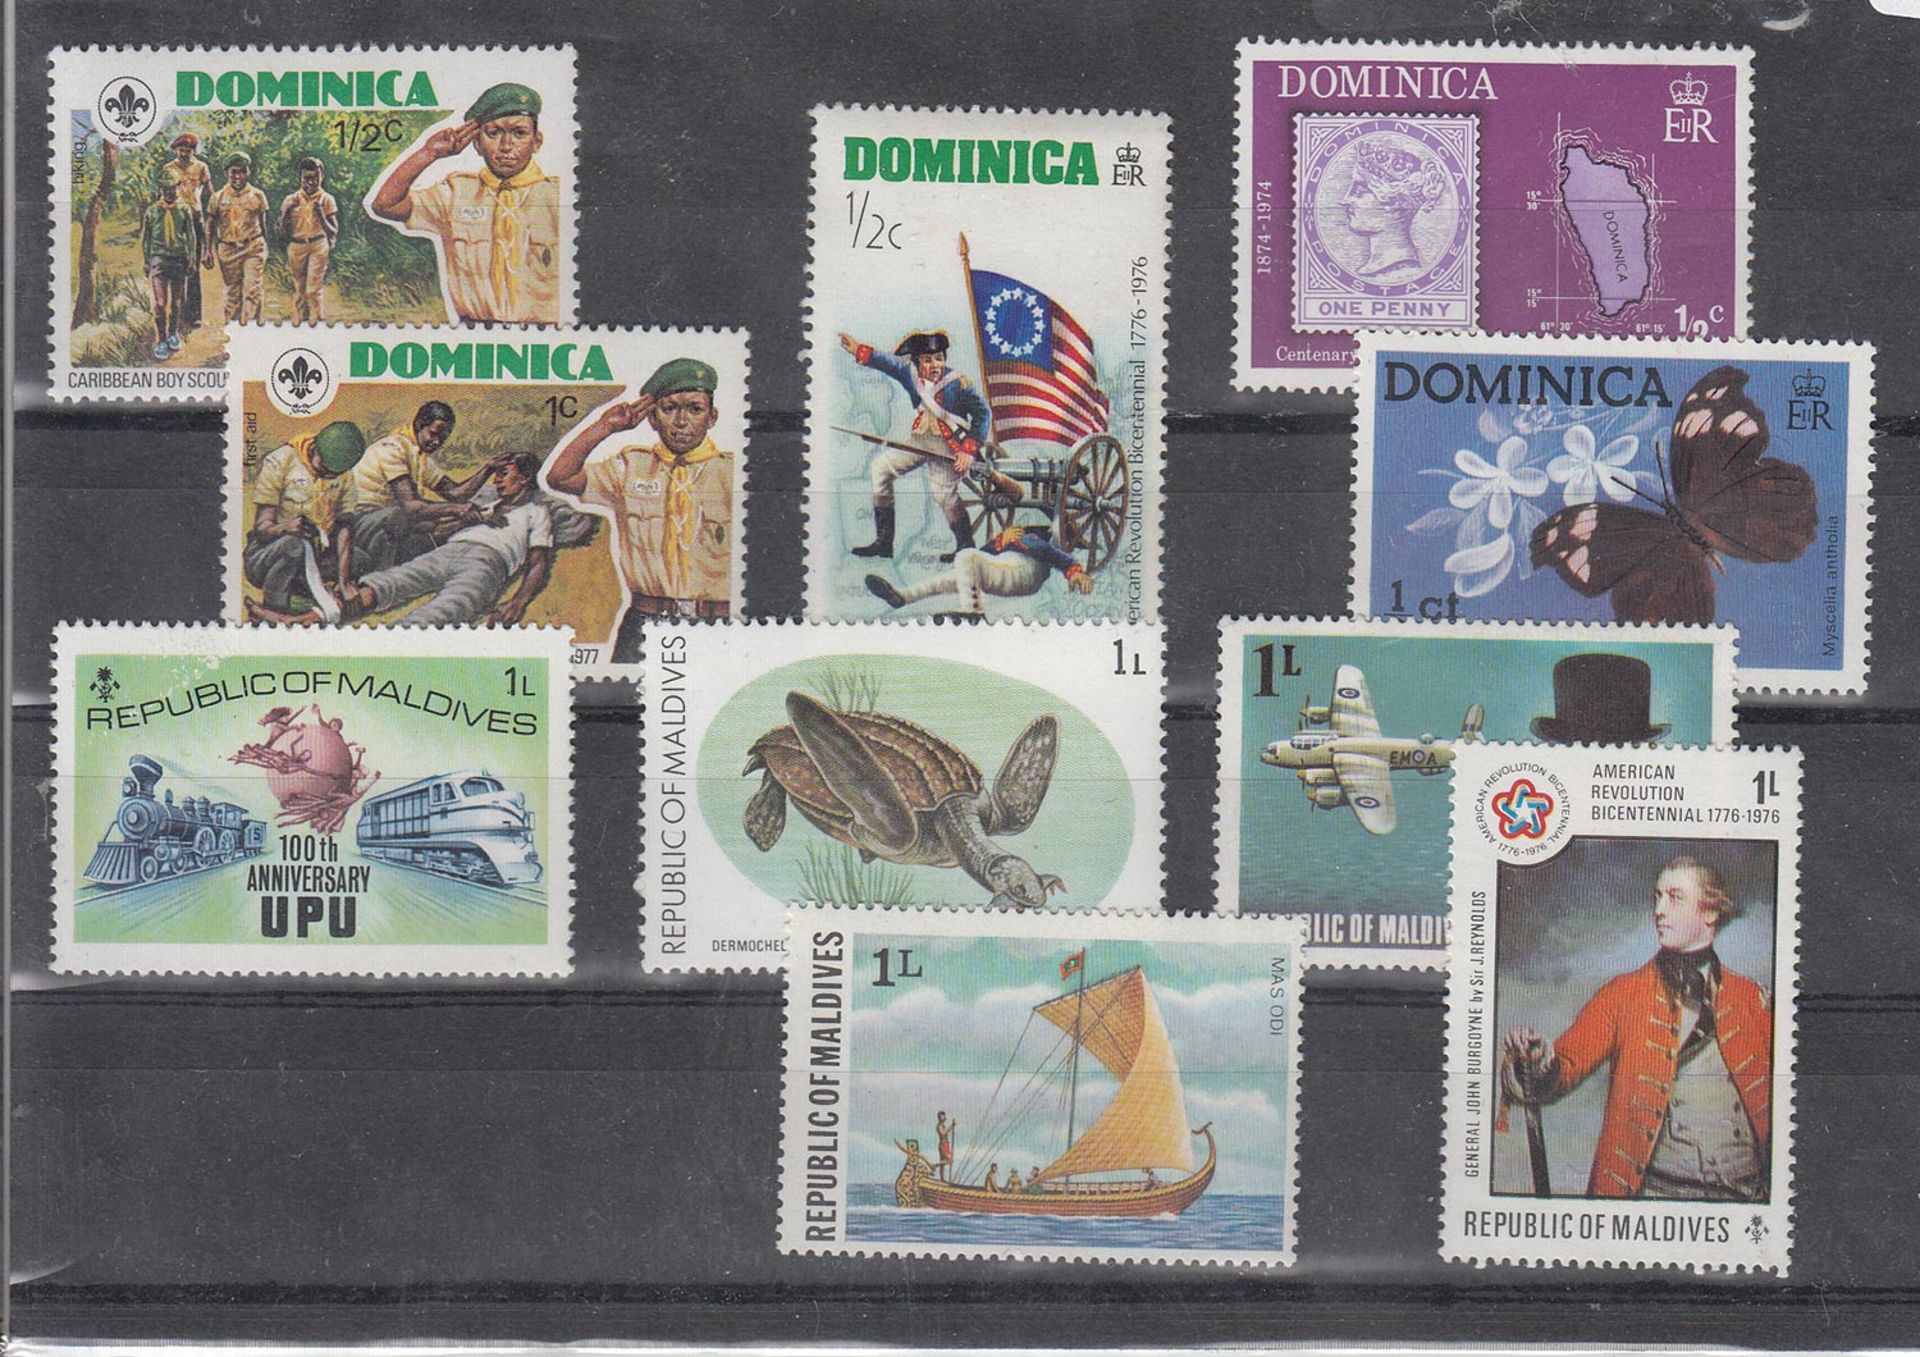 SteckkarteMalediven, Dominicanische Republik, 10 Werte, postfrischMindestpreis: 2 EUR